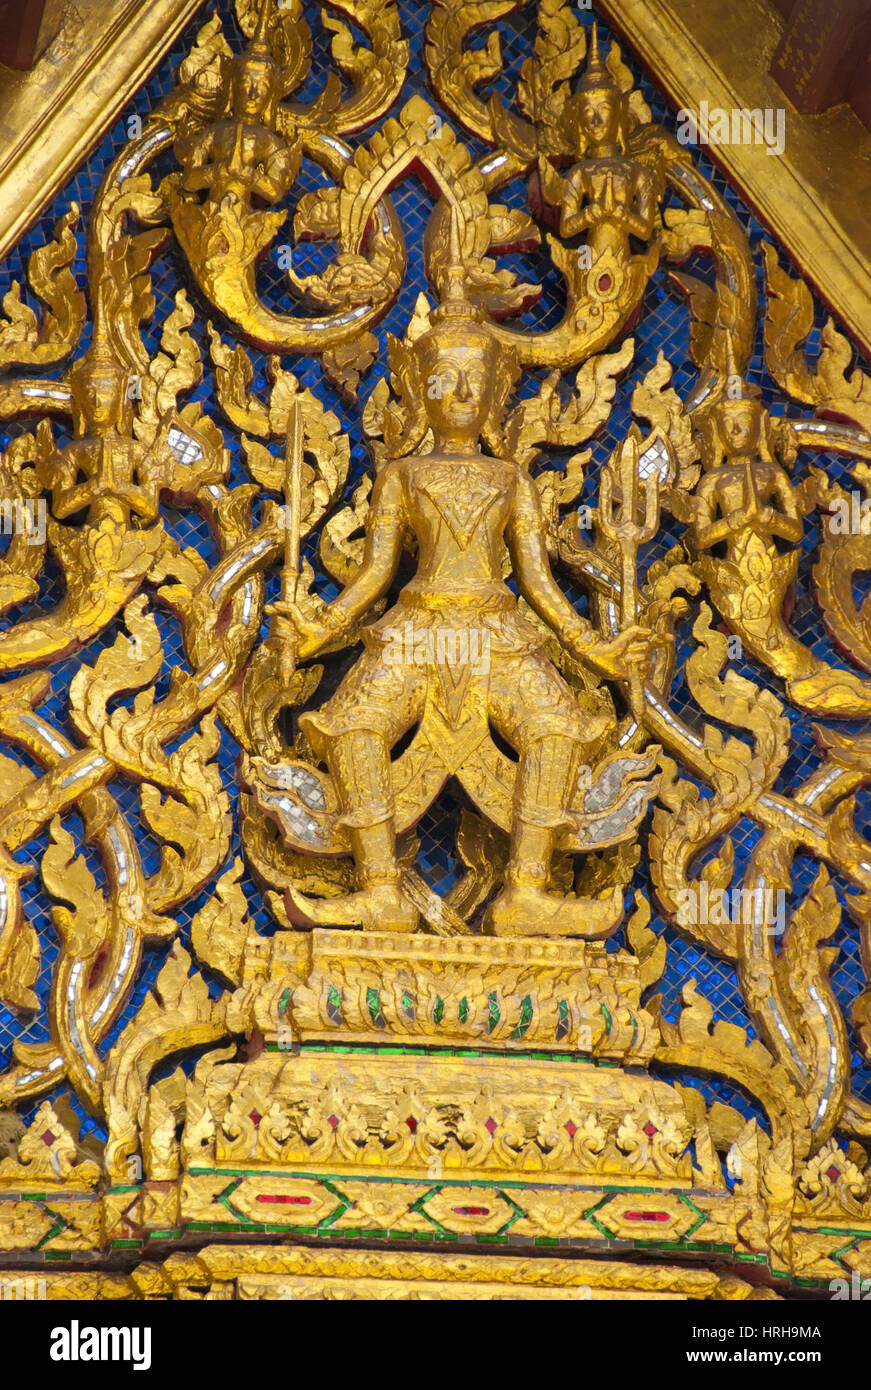 Buddhistische Tempelanlage, Wat Phra Kaeo, Bangkok, Thailand - Wat Phra Kaeo, Bangkok, Thailand Stock Photo